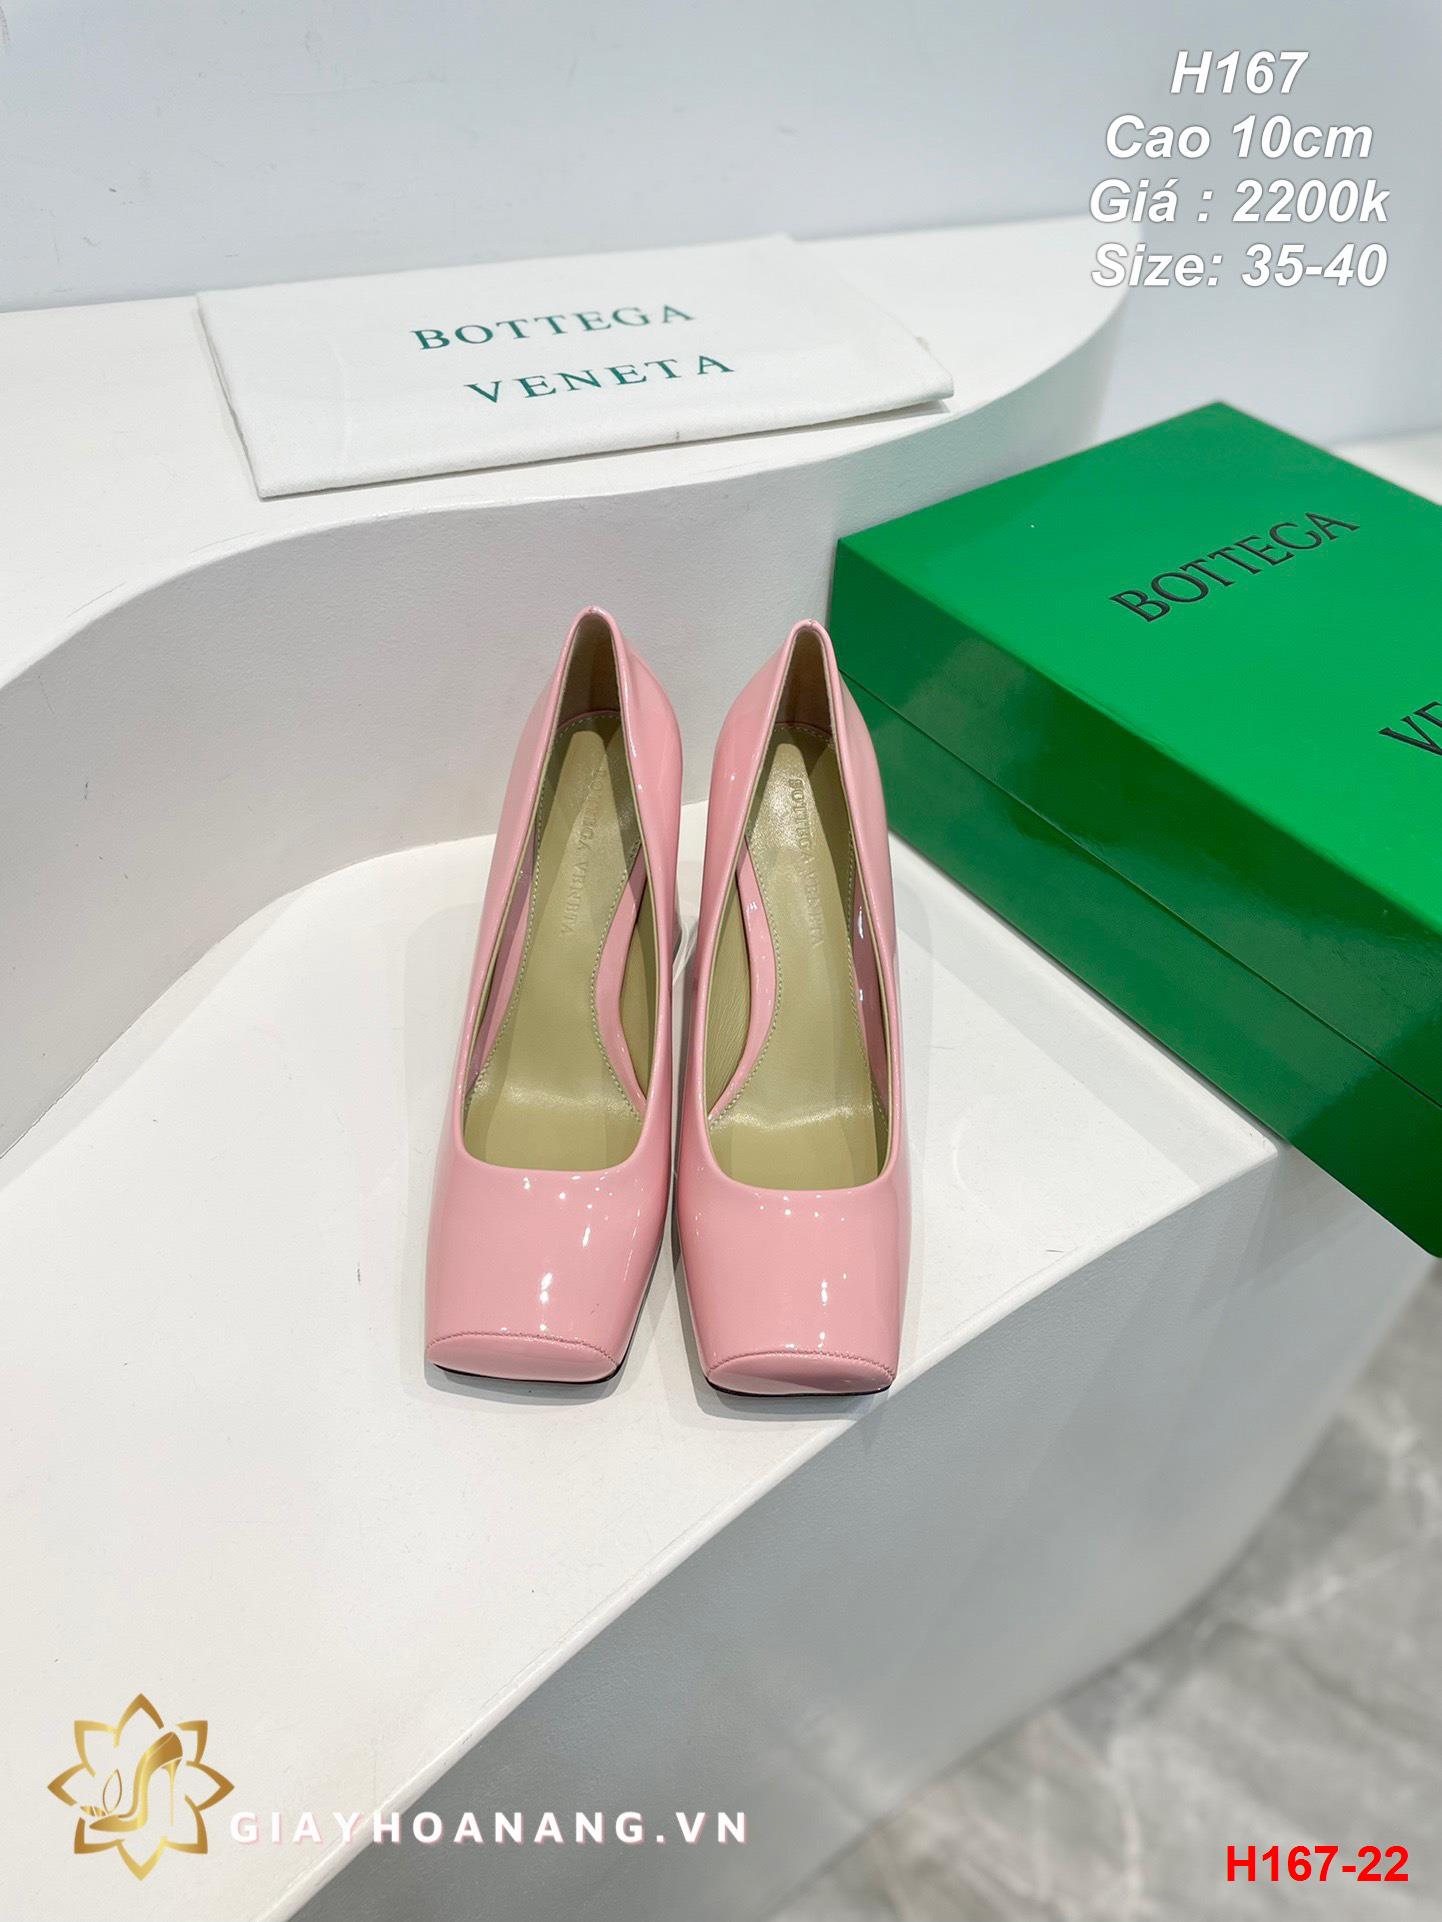 H167-22 Bottega Veneta giày cao 10cm siêu cấp